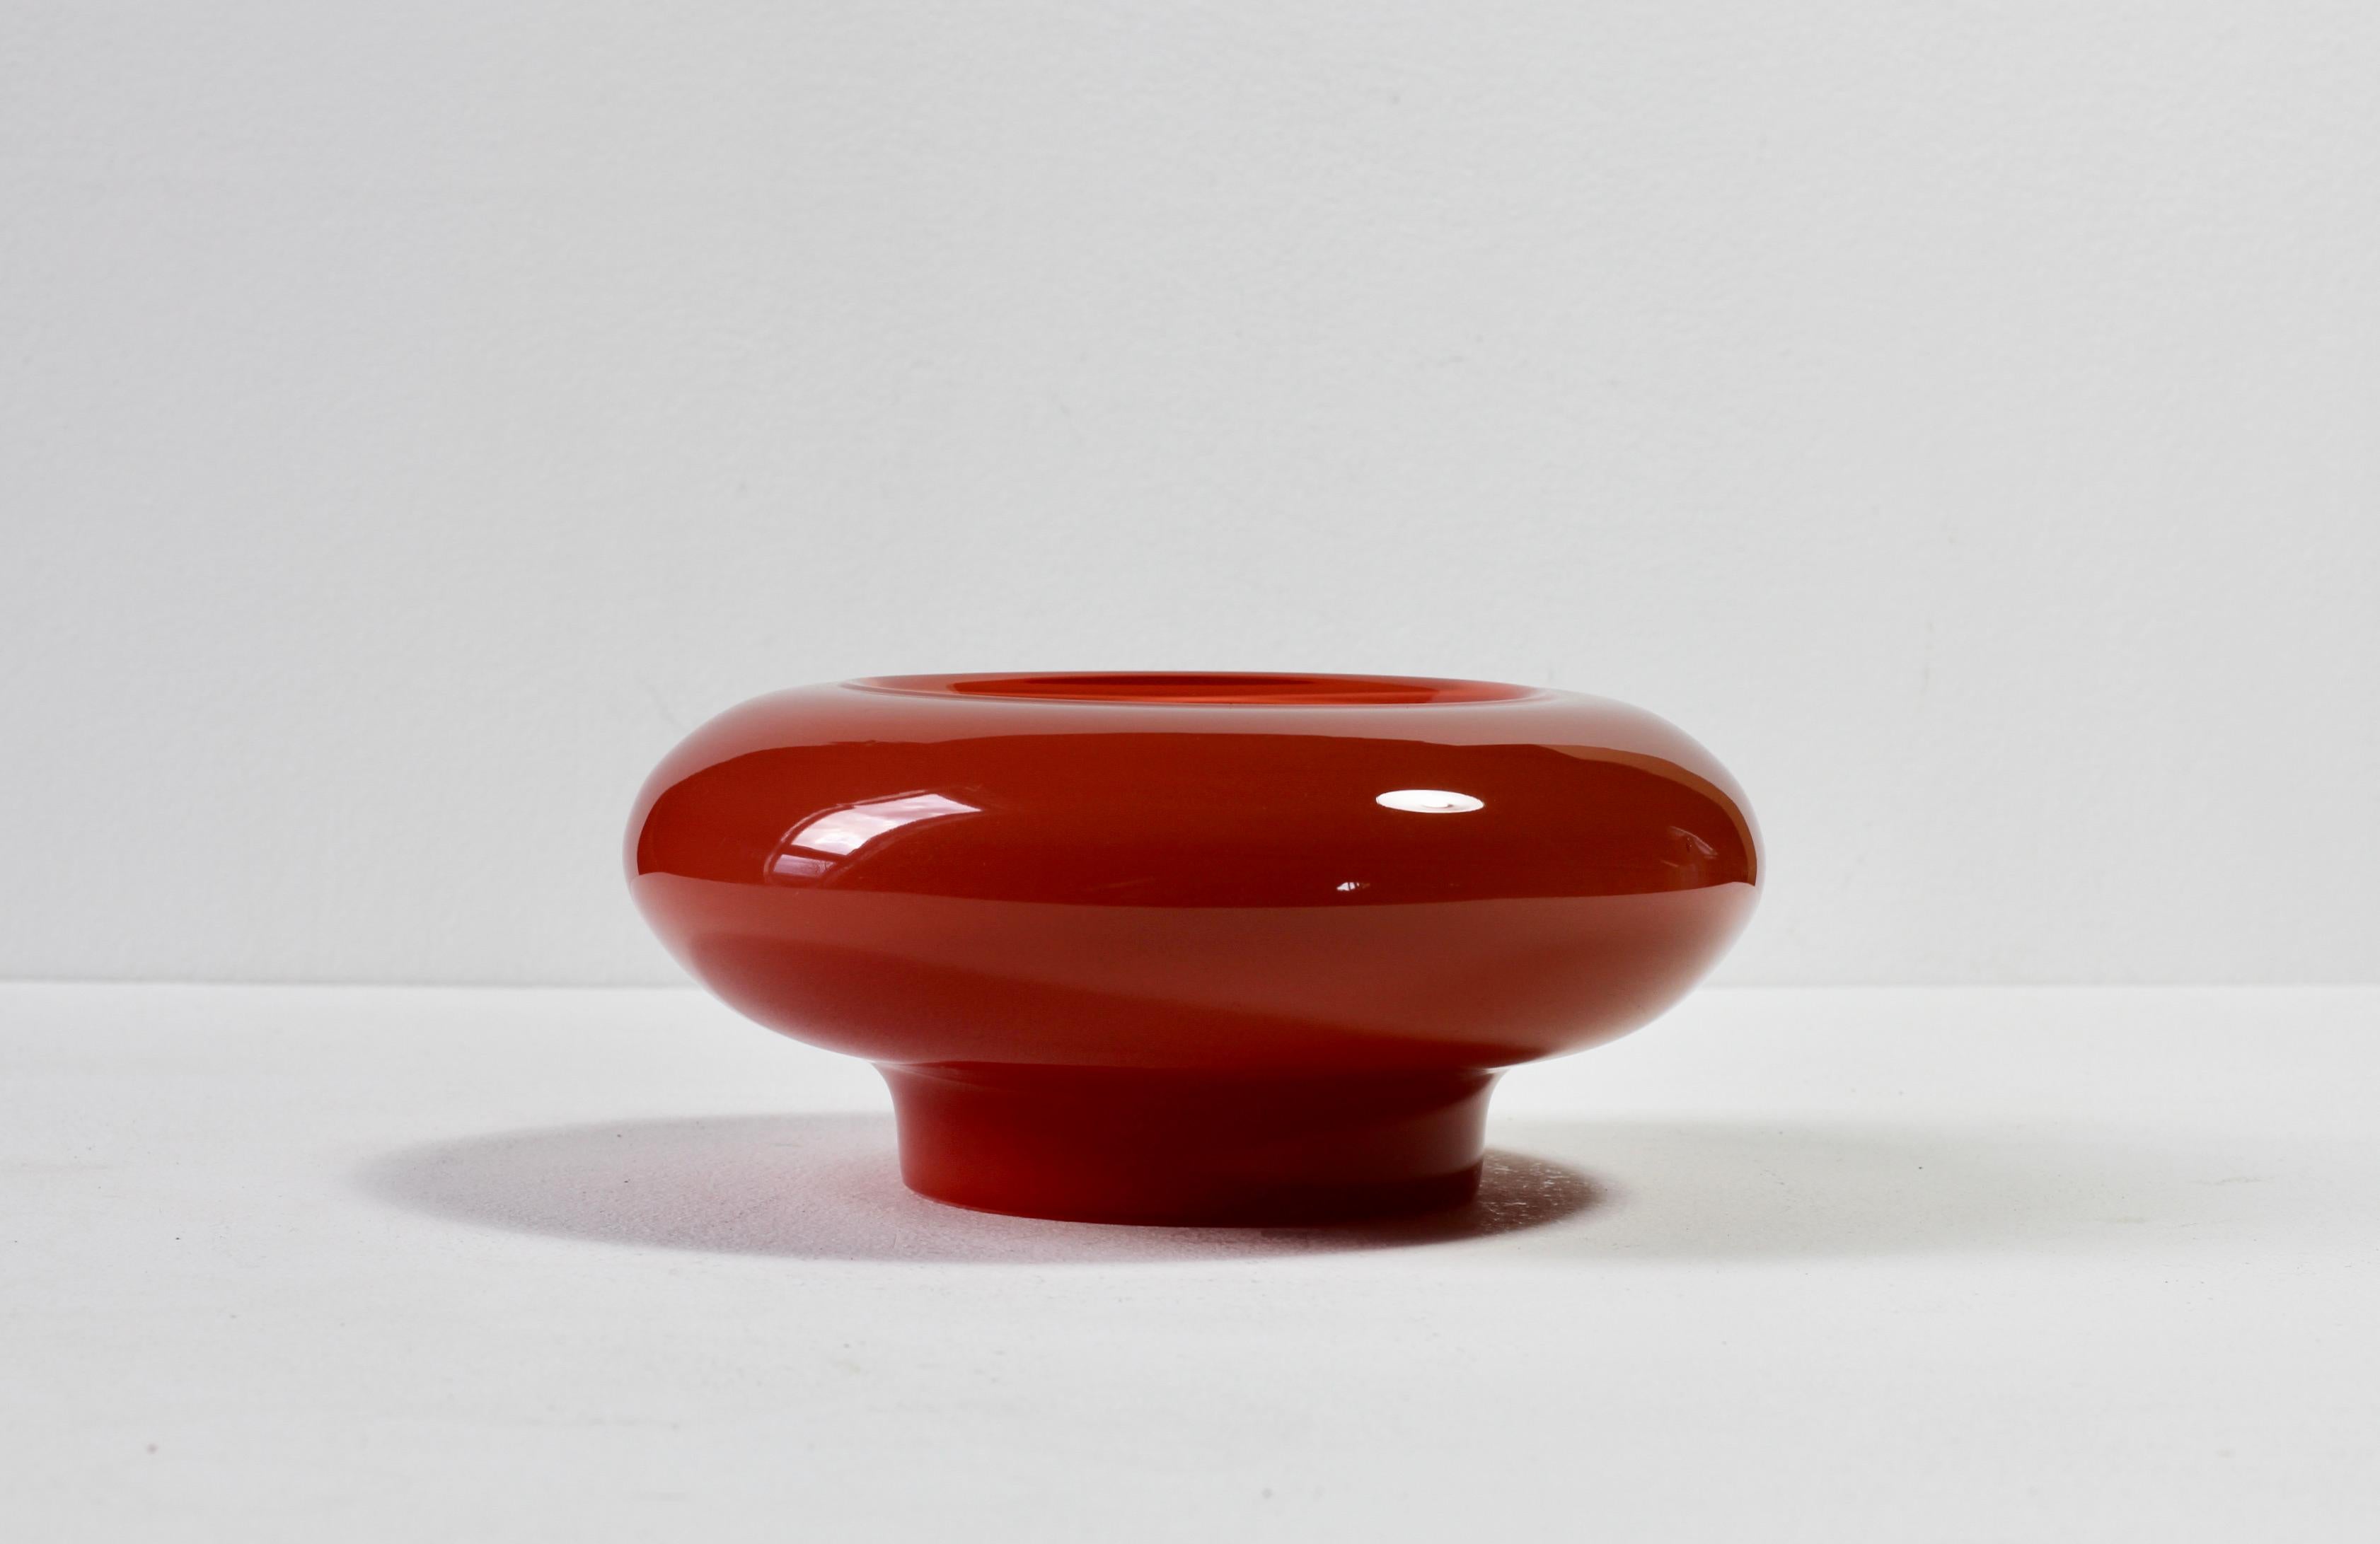 Merveilleux bol ou vase en verre vintage du milieu du siècle, d'un rouge foncé, attribué à Ermanno Nason pour Cenedese de Murano, Italie. 

Can peut être utilisé comme bol, plat, vide-poche, cendrier ou comme vase lorsqu'il est retourné - idéal pour